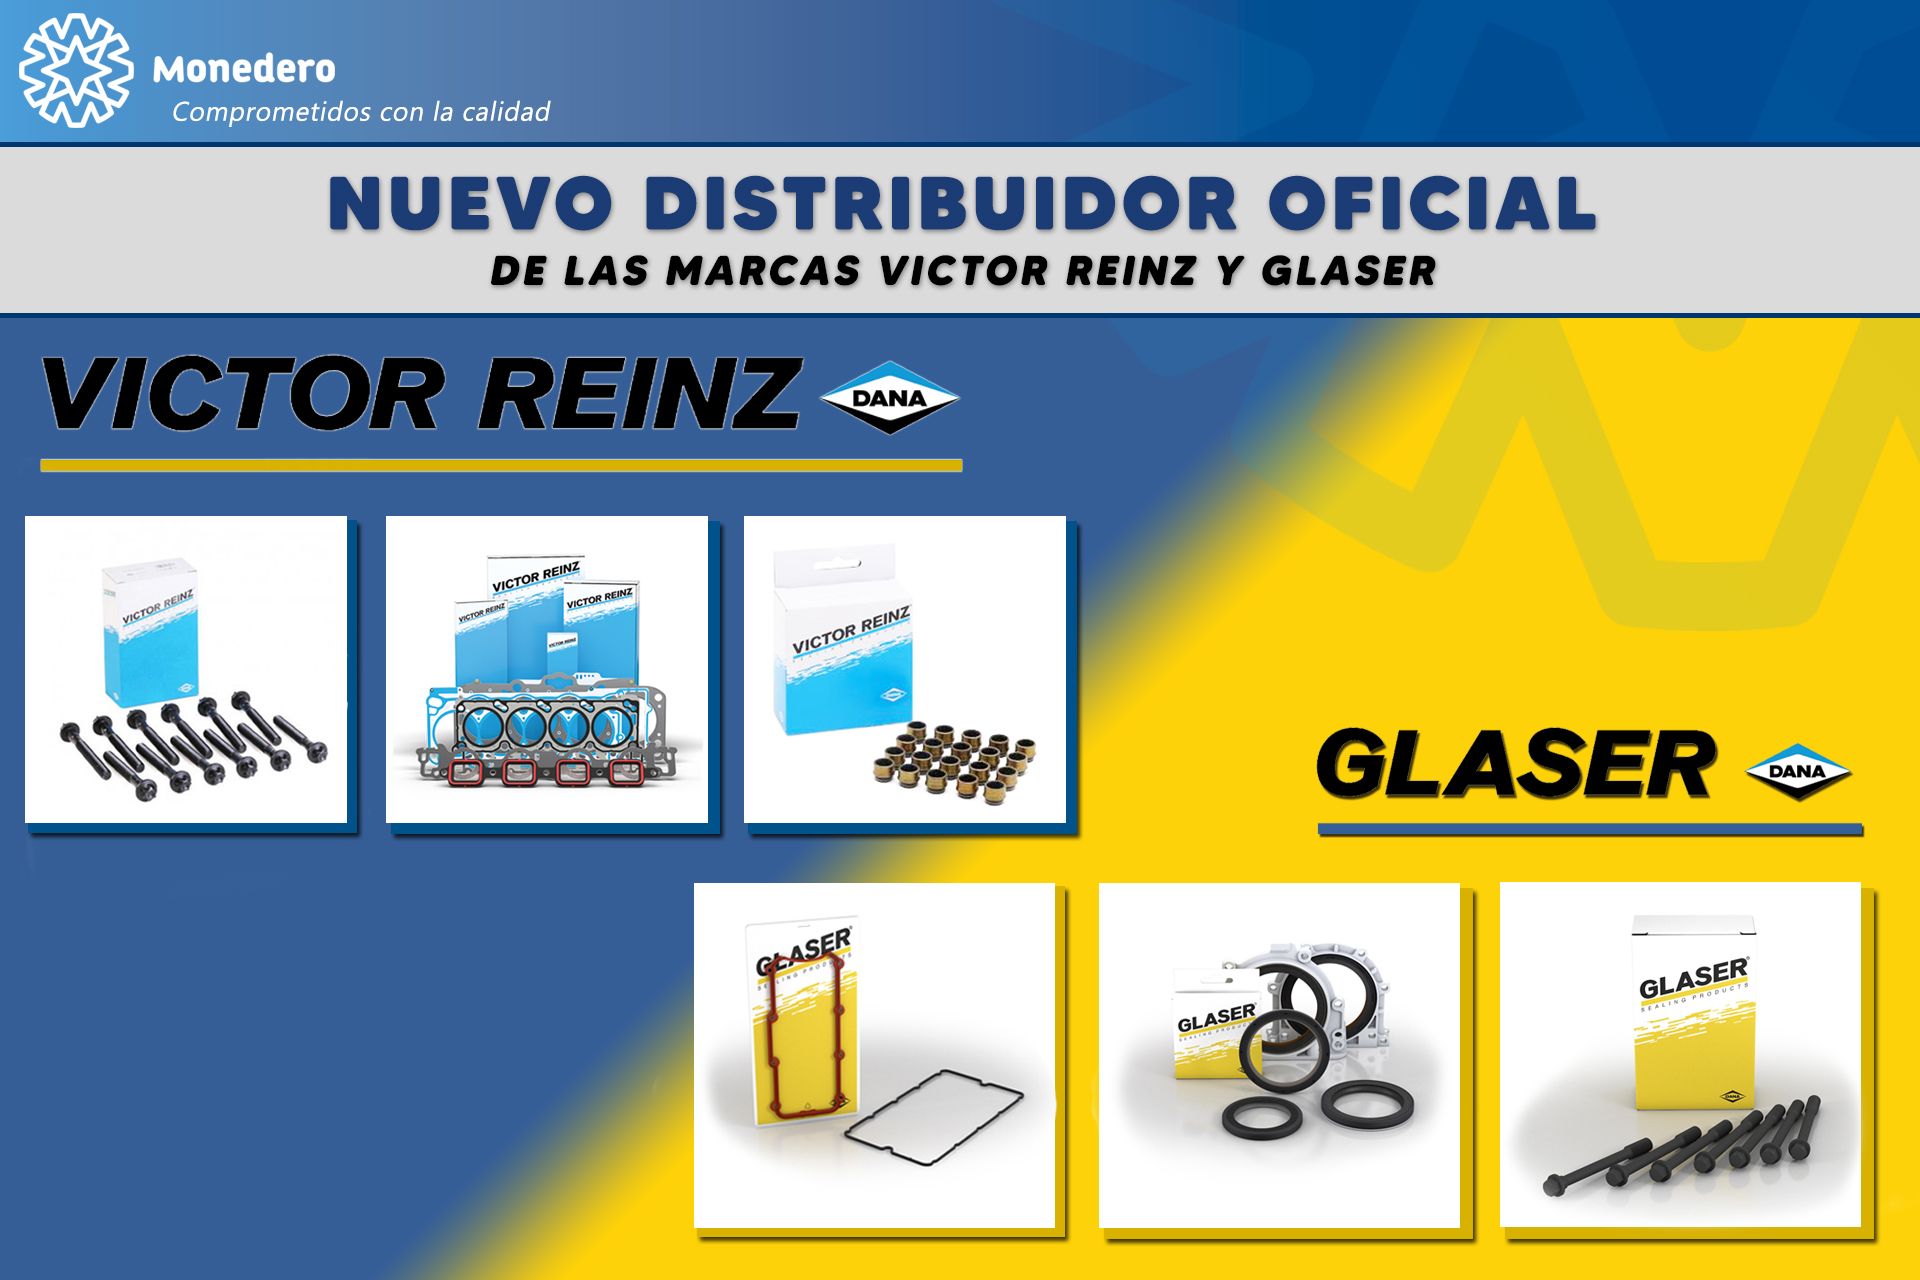 Monedero es distribuidor oficial de Victor Reinz y Glaser